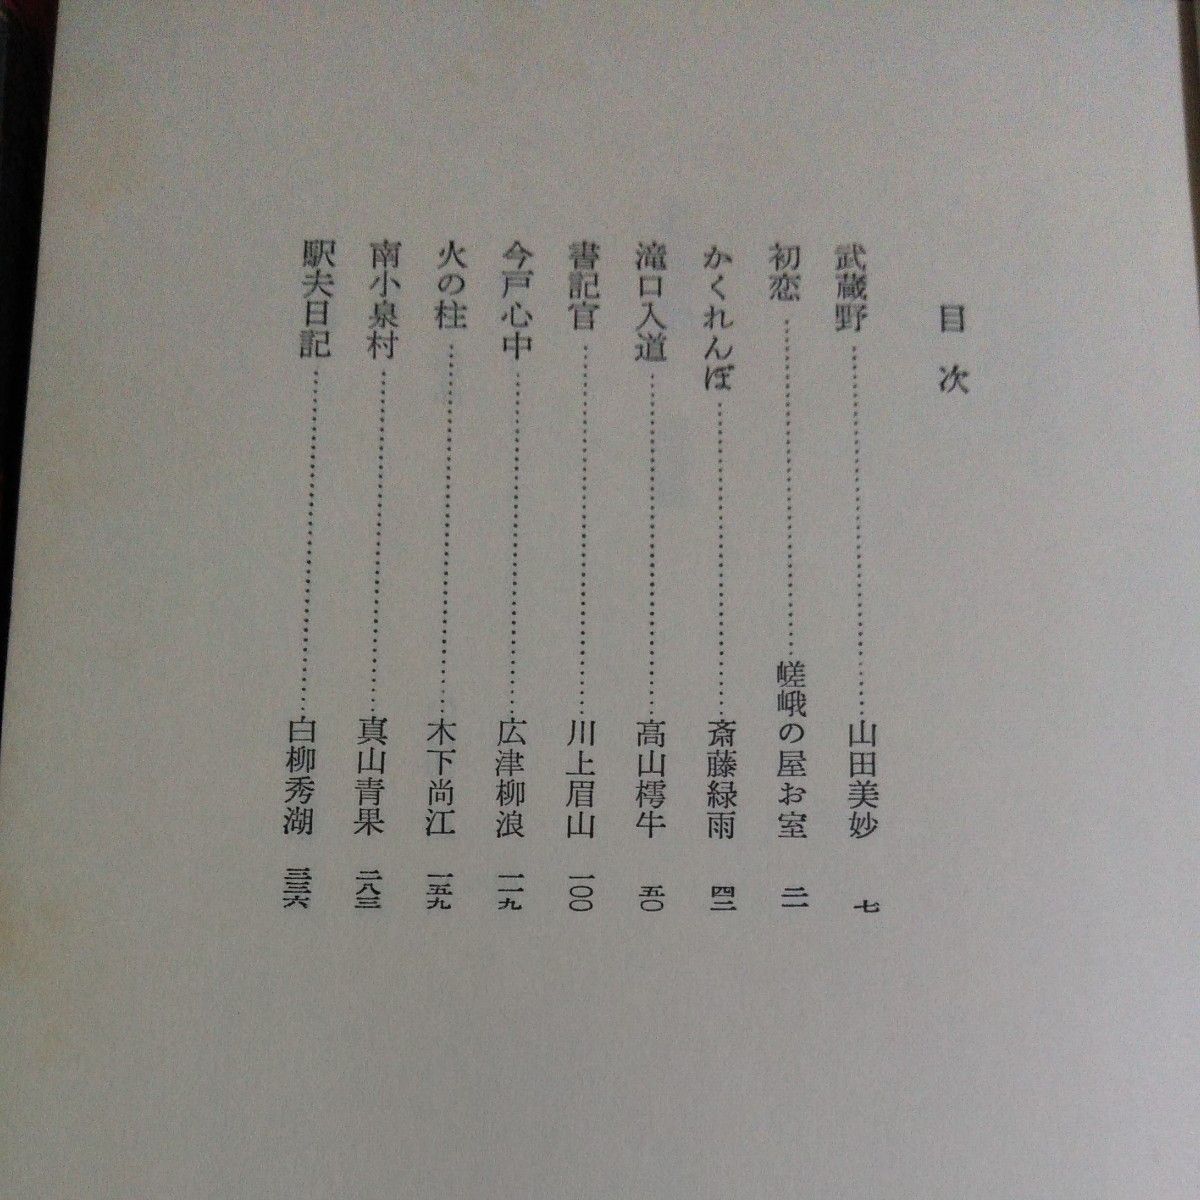 日本文学全集「名作集」(明治、大正、昭和)集英社